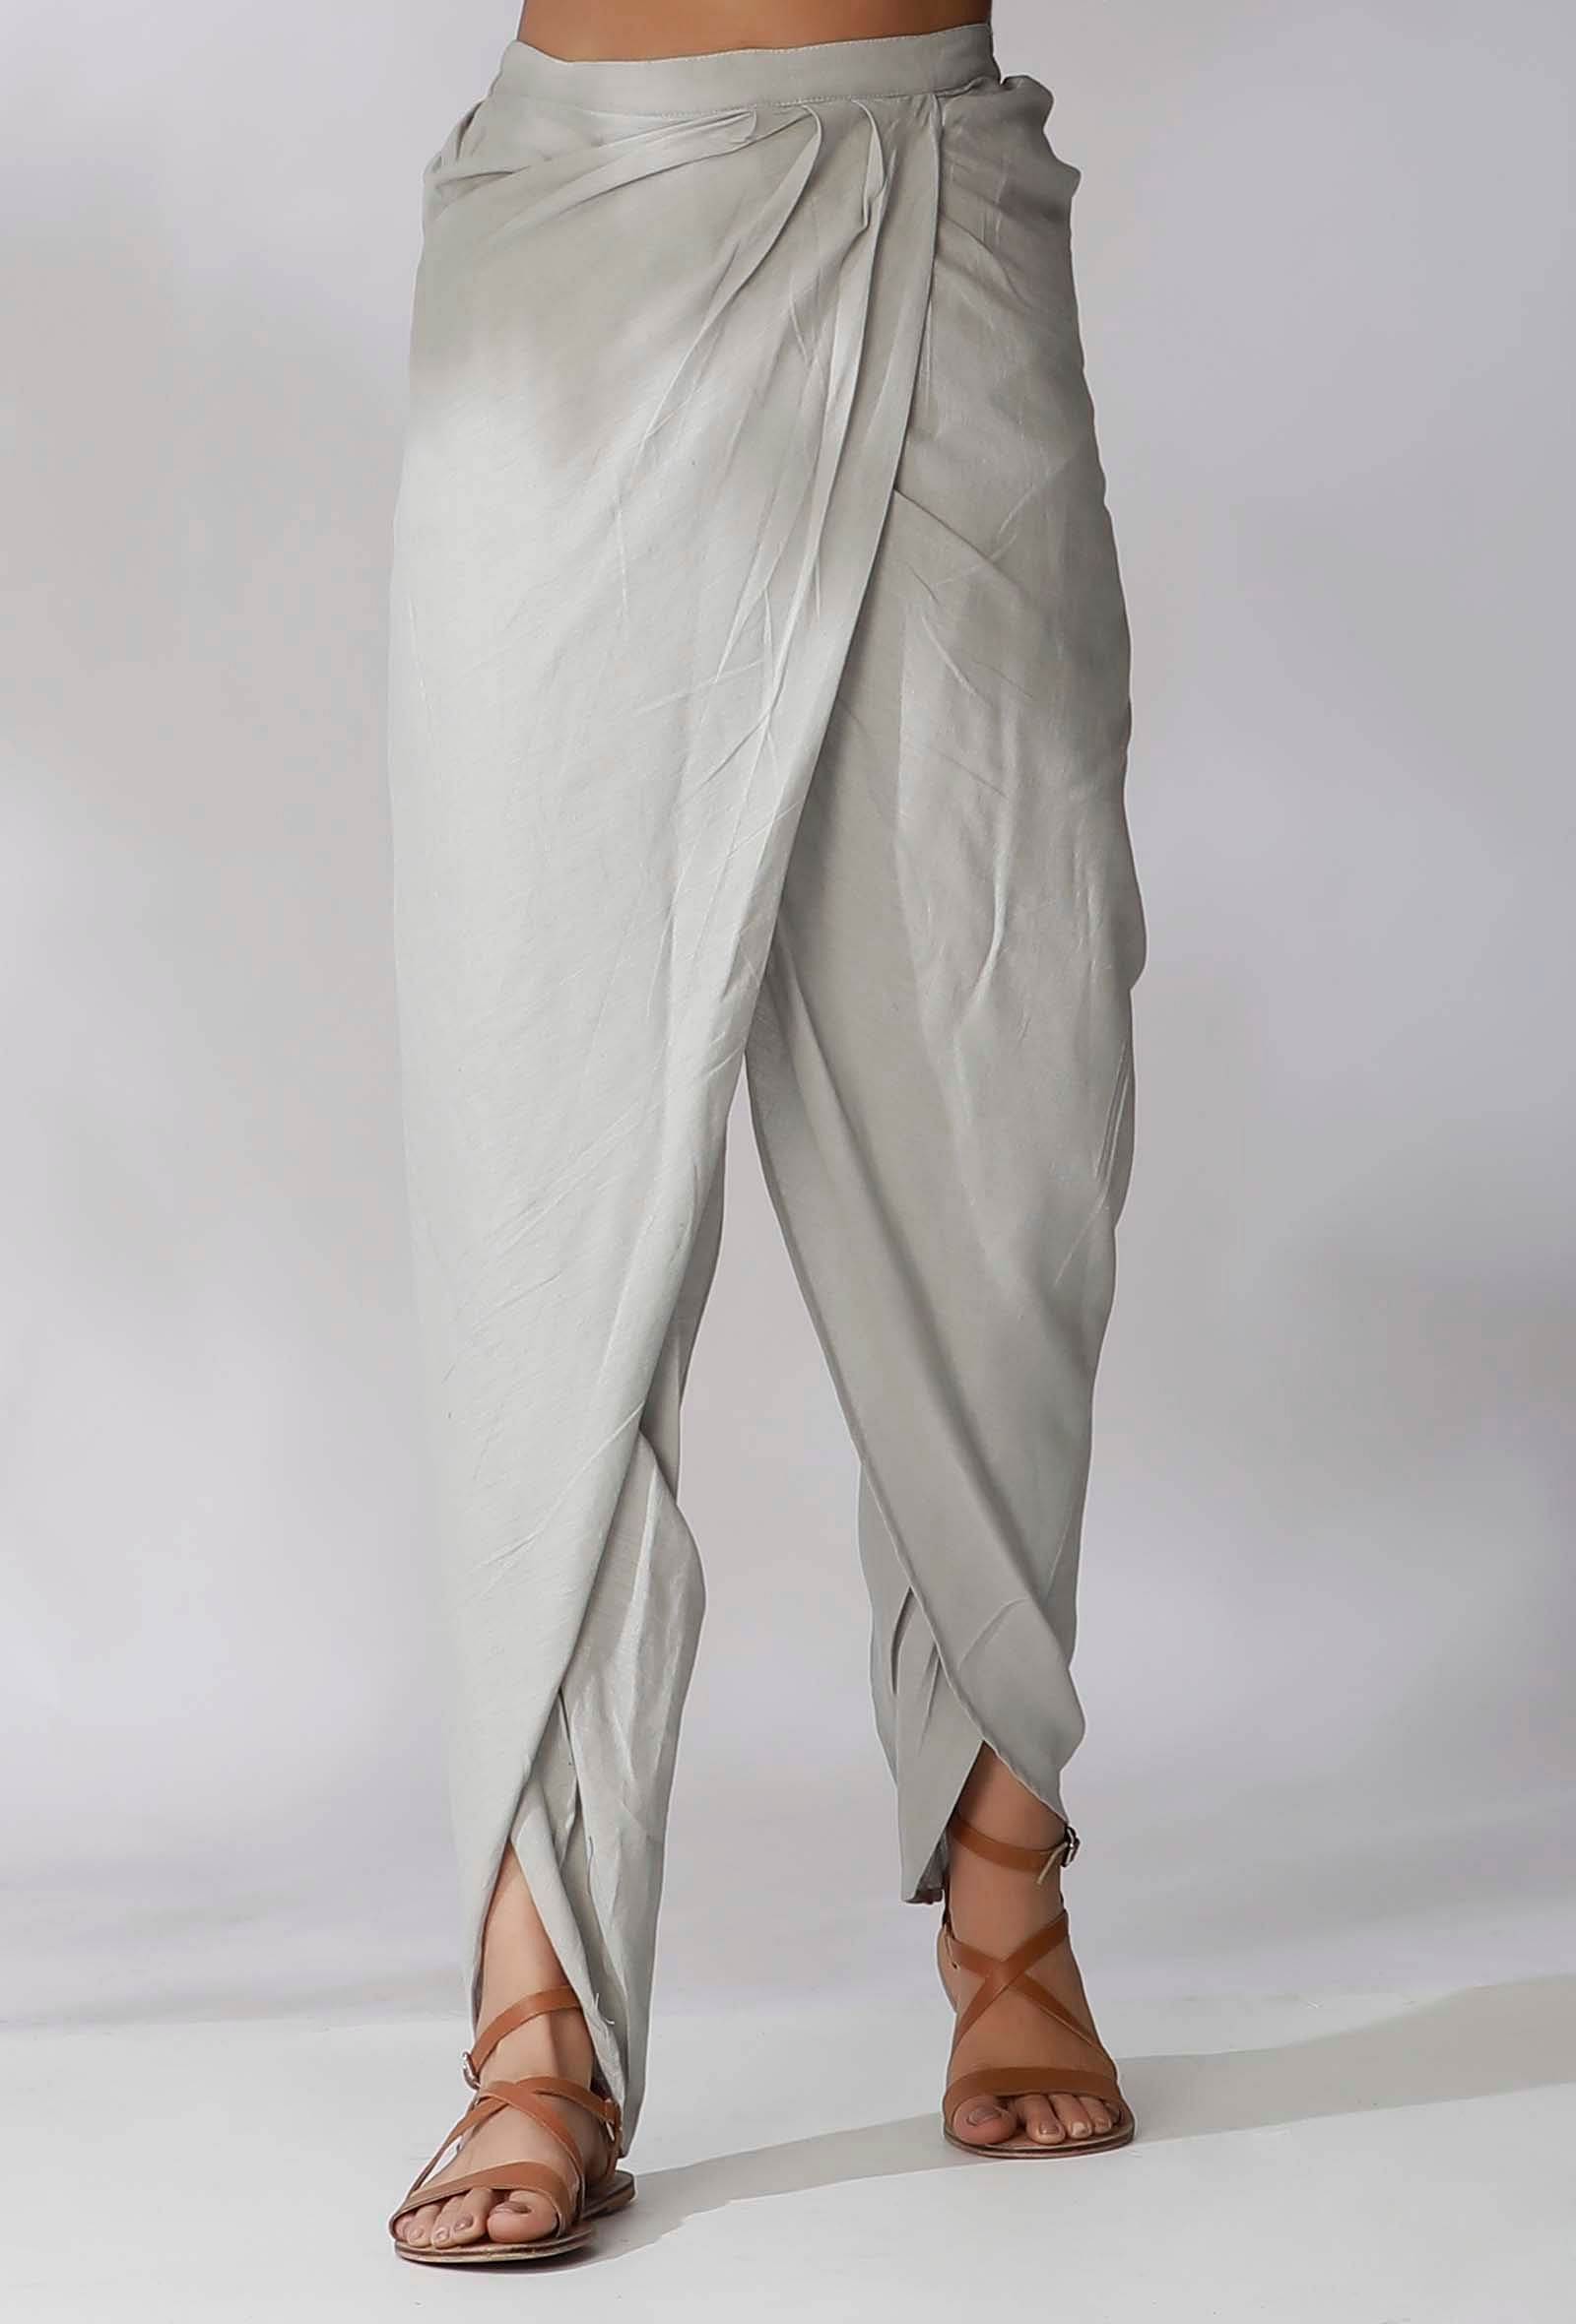 Buy Suti Women Cotton Printed Dhoti Pants Grey online